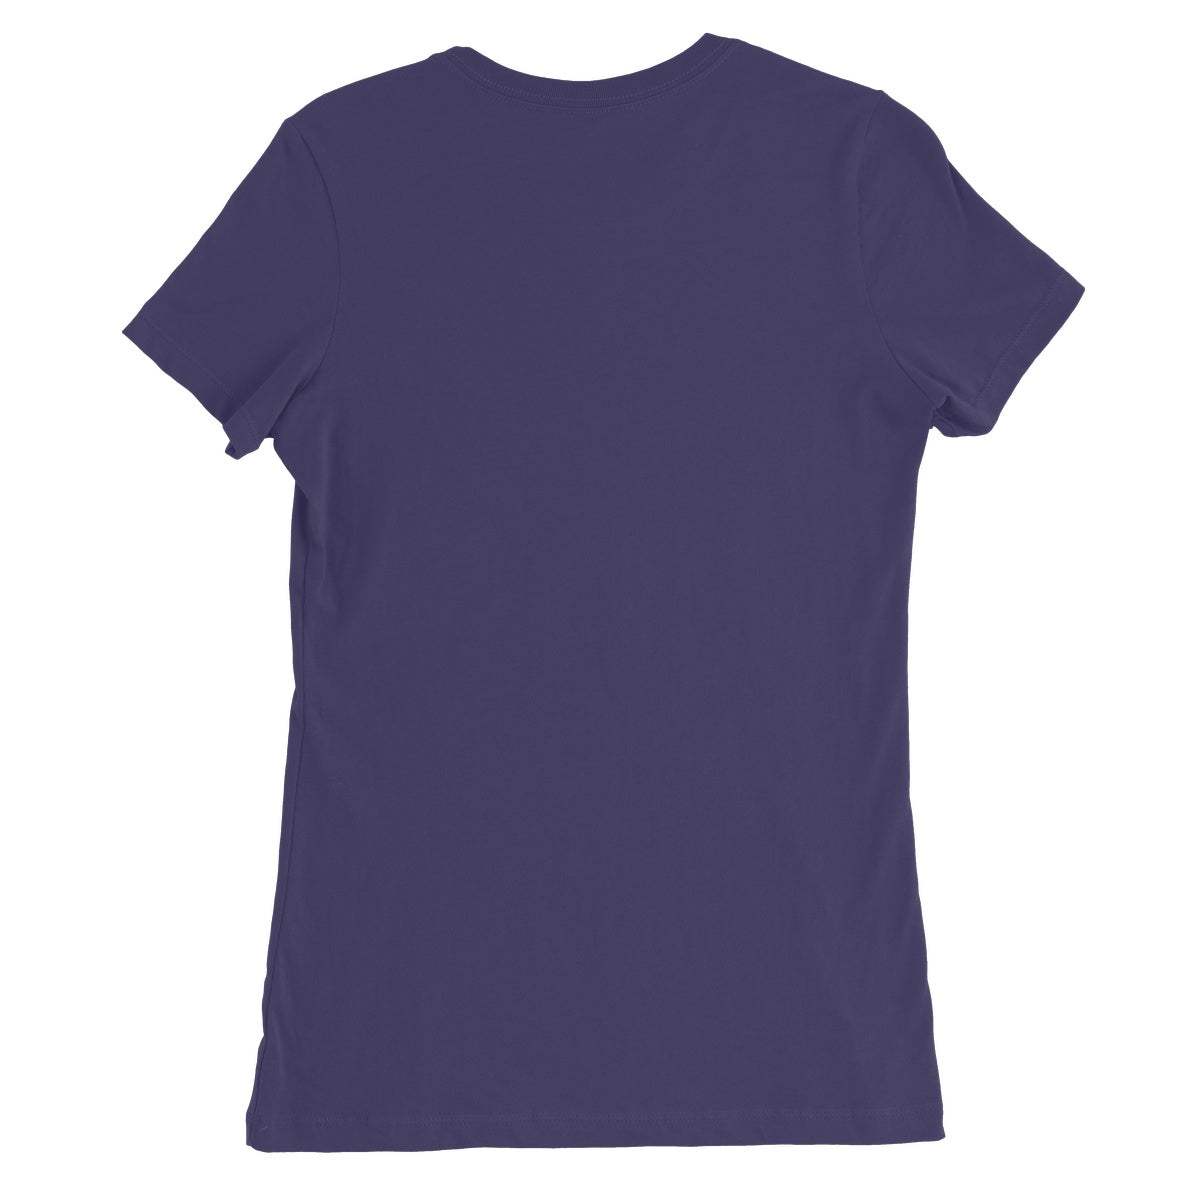 &quot;Wilson Remain&quot; Apparel Women&#39;s Favourite T-Shirt